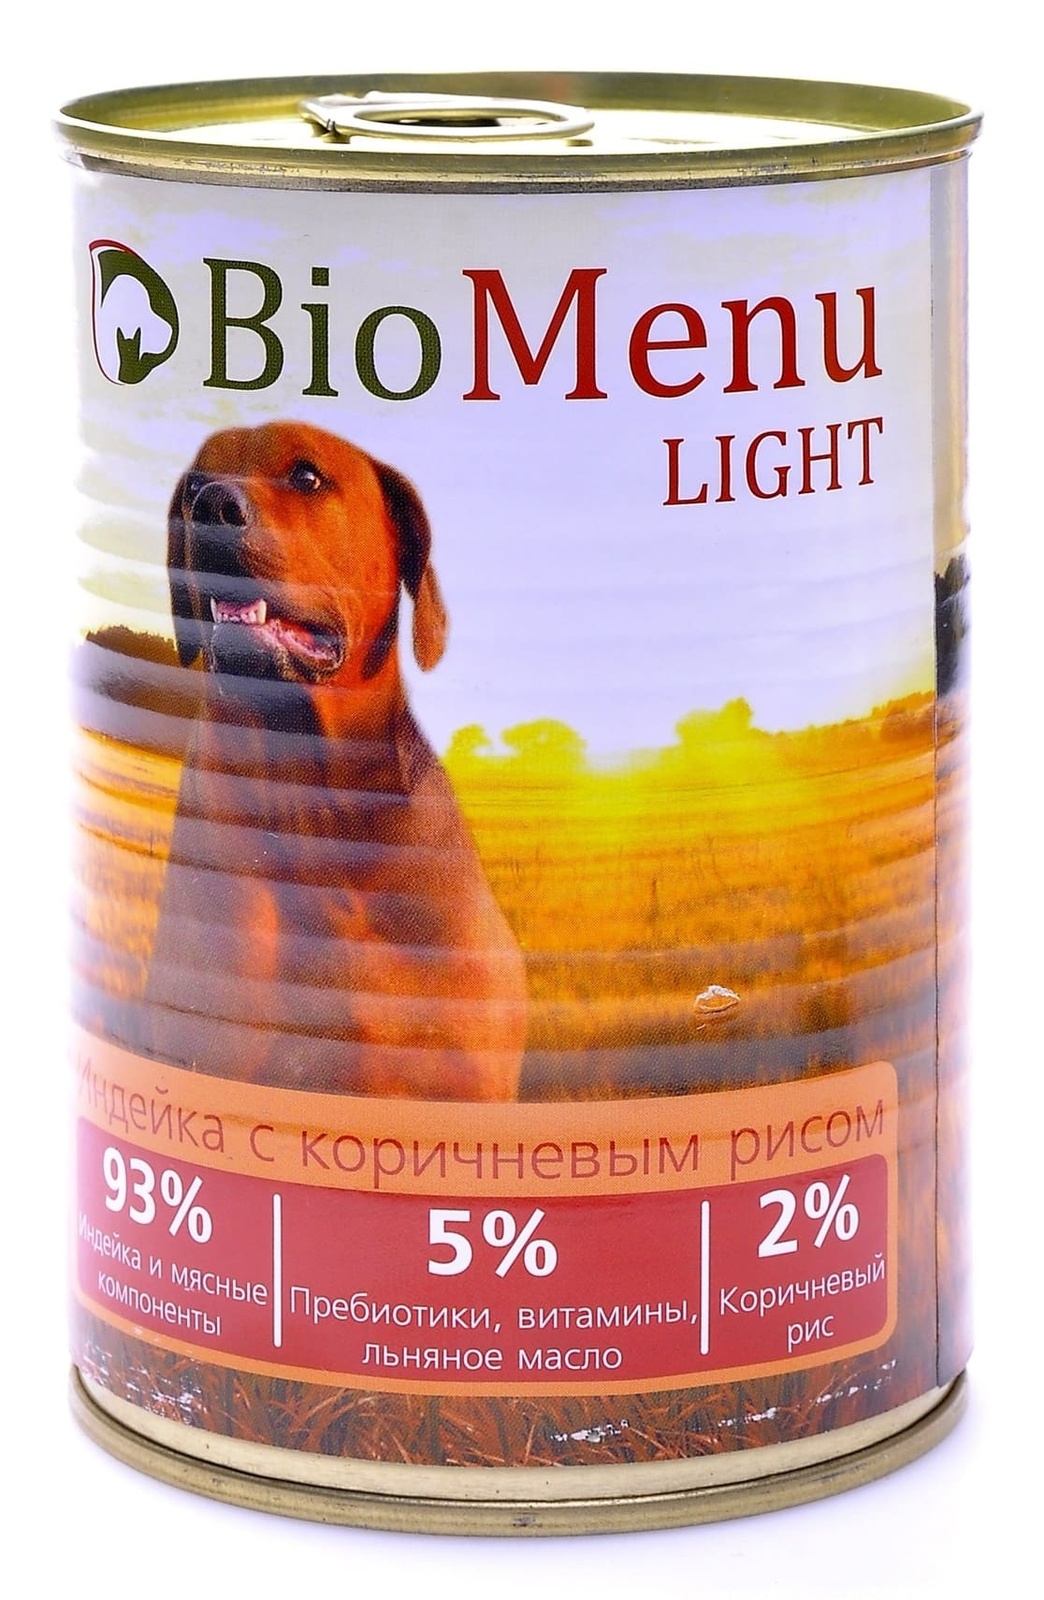 BioMenu BioMenu консервы для собак низкокалорийные с индейкой и коричневым рисом (100 г) biomenu biomenu консервы для собак мясное ассорти 100 г